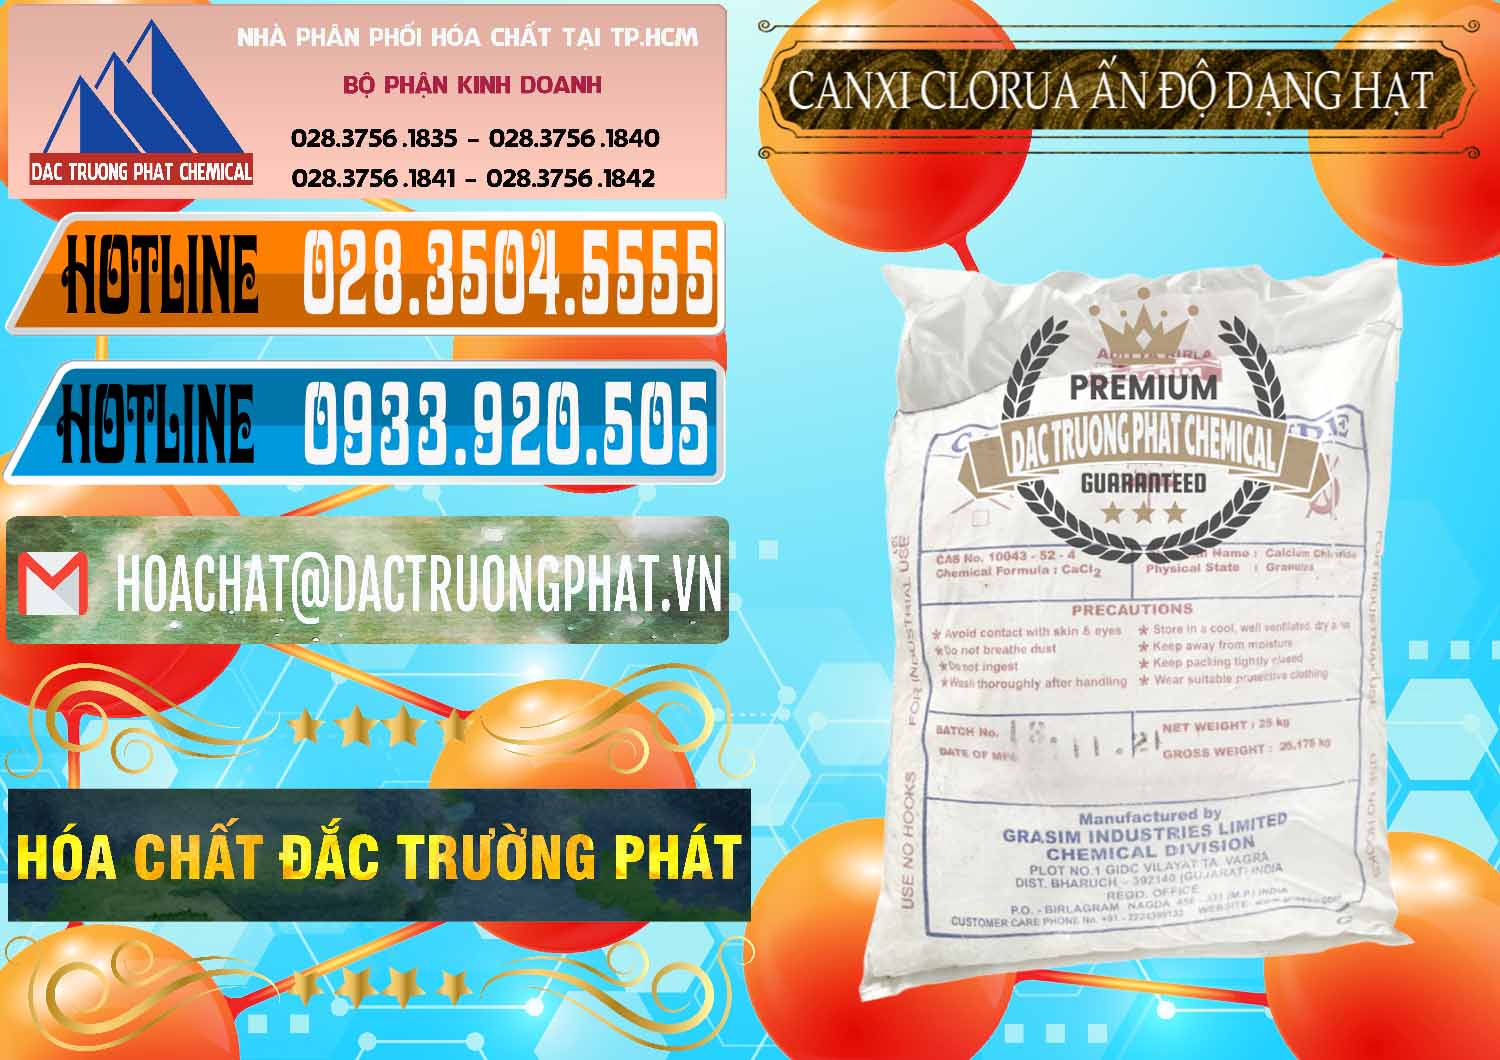 Đơn vị cung cấp & bán CaCl2 – Canxi Clorua Dạng Hạt Aditya Birla Grasim Ấn Độ India - 0418 - Cung cấp & nhập khẩu hóa chất tại TP.HCM - stmp.net